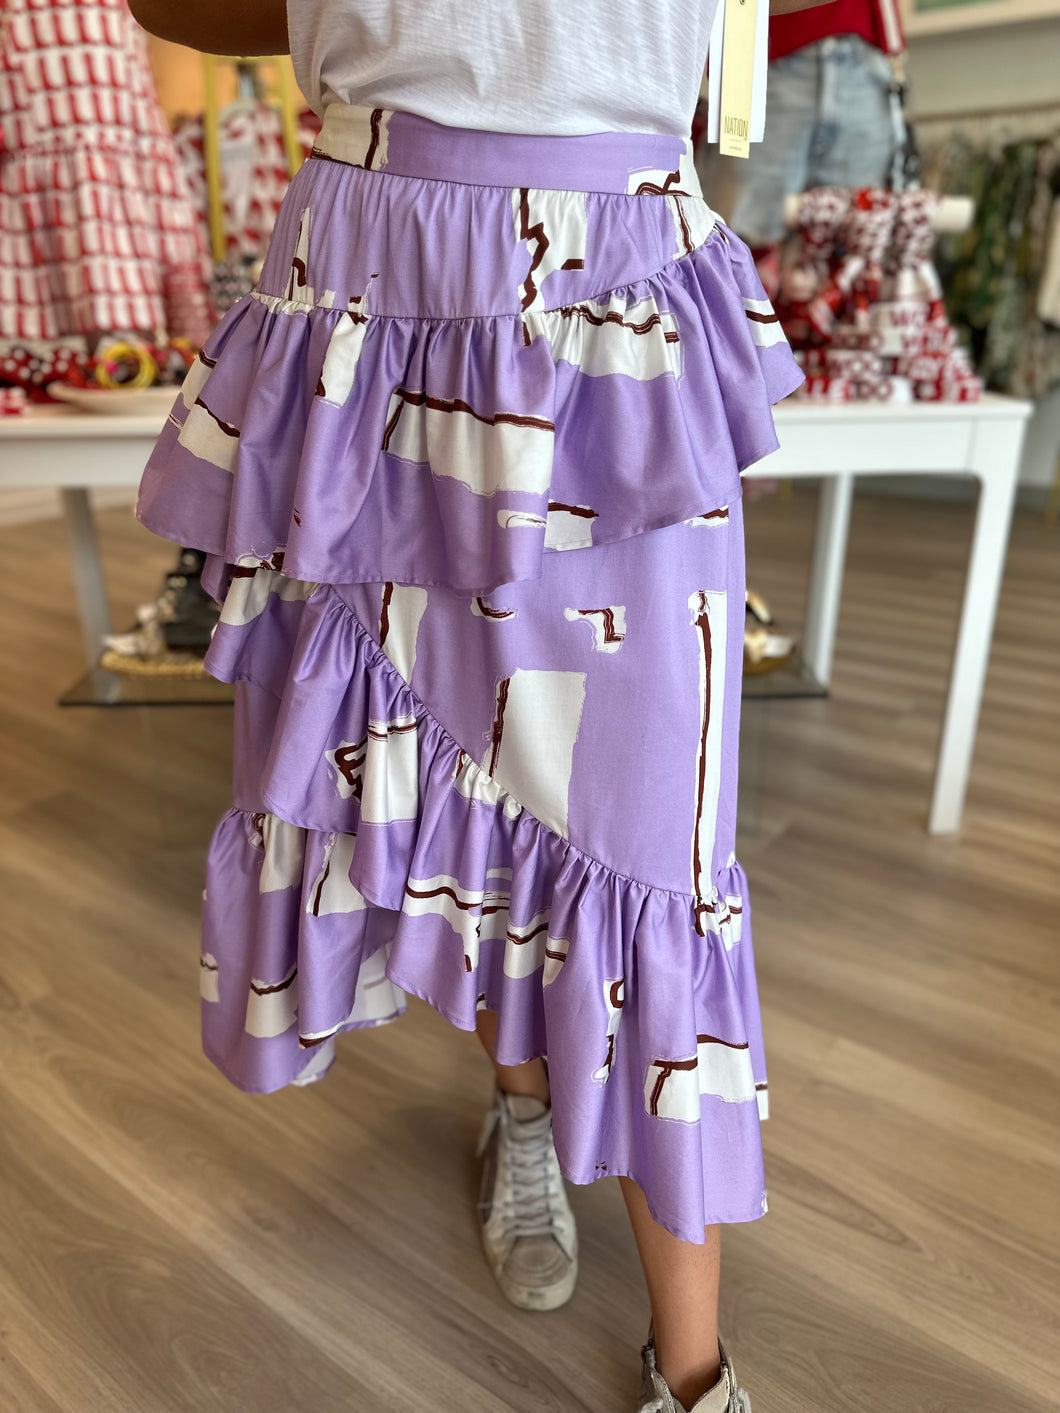 Lulu Skirt in Lavender